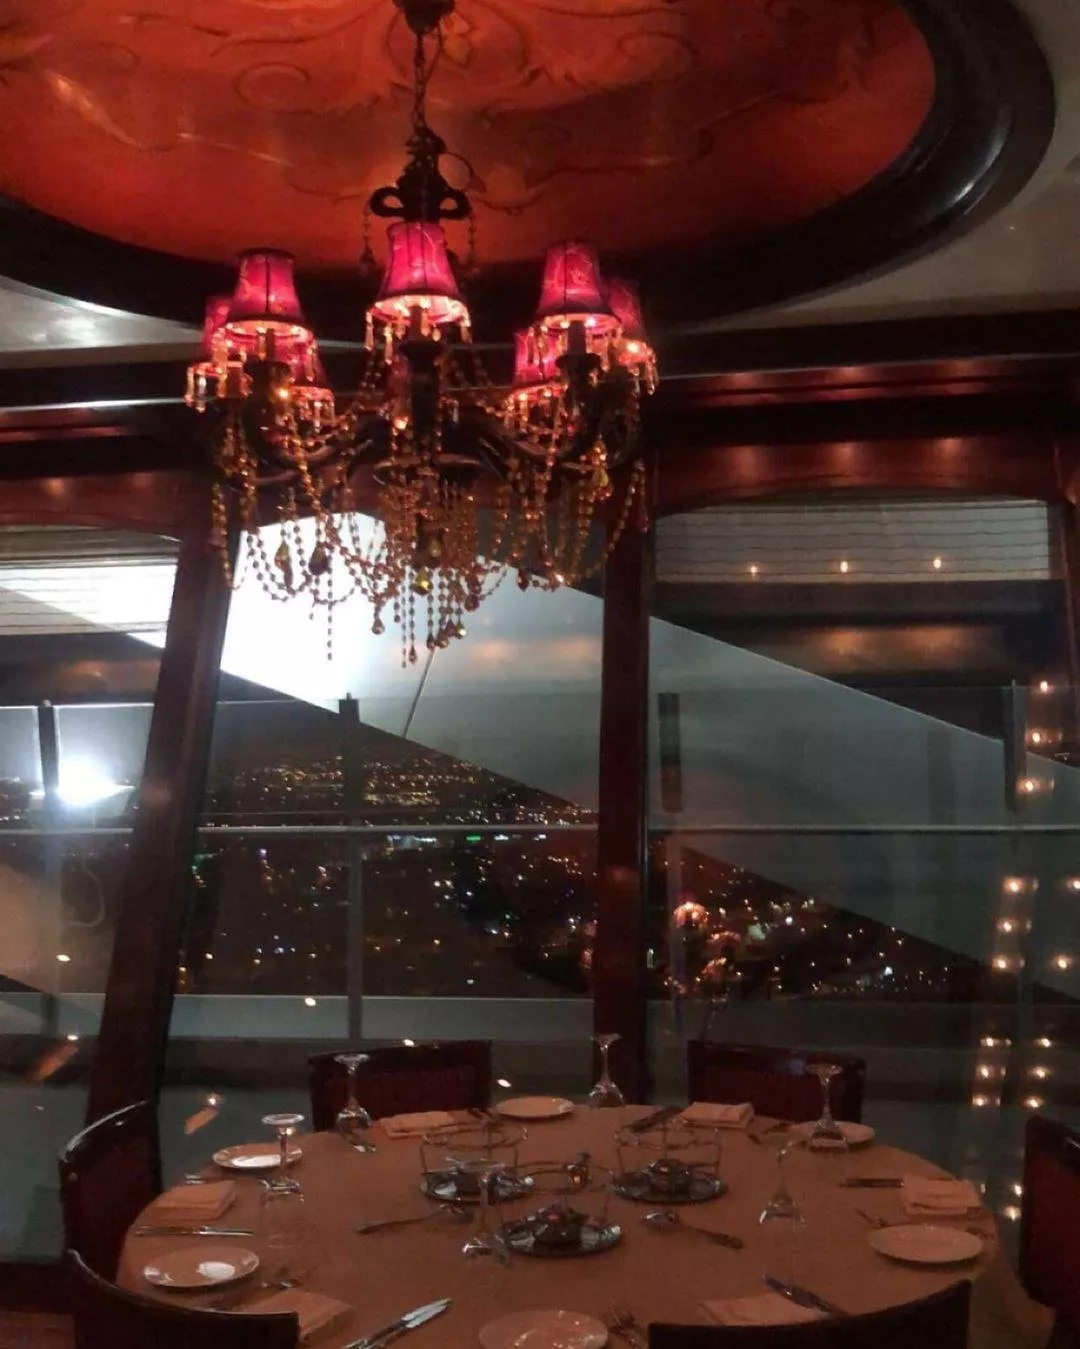 9 مطاعم في الرياض، اقصديها لقضاء وقت رومانسي مع زوجكِ